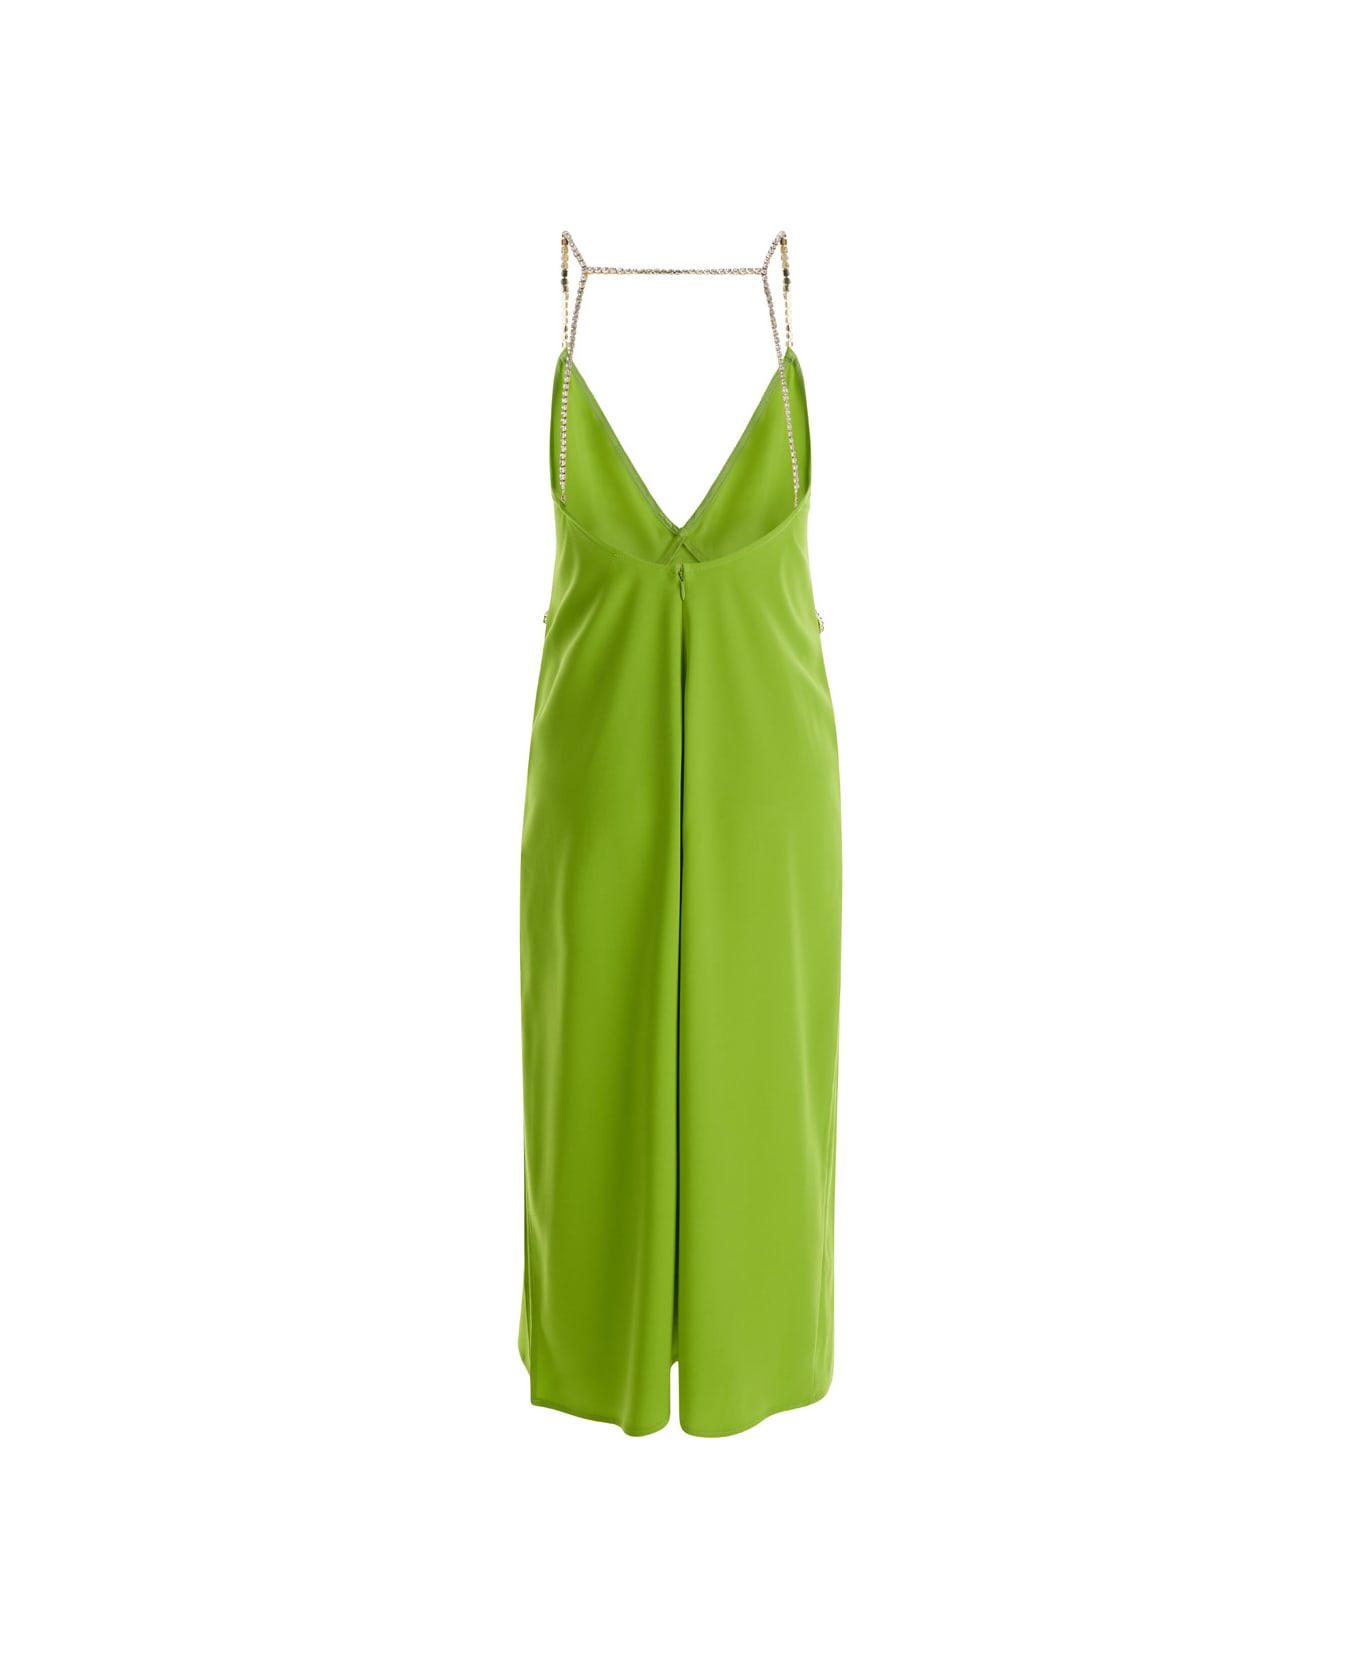 Liu-Jo Avocado Green Midi Dress With Rhinestone Straps In Crepe Fabric Woman Liu-Jo - GREEN